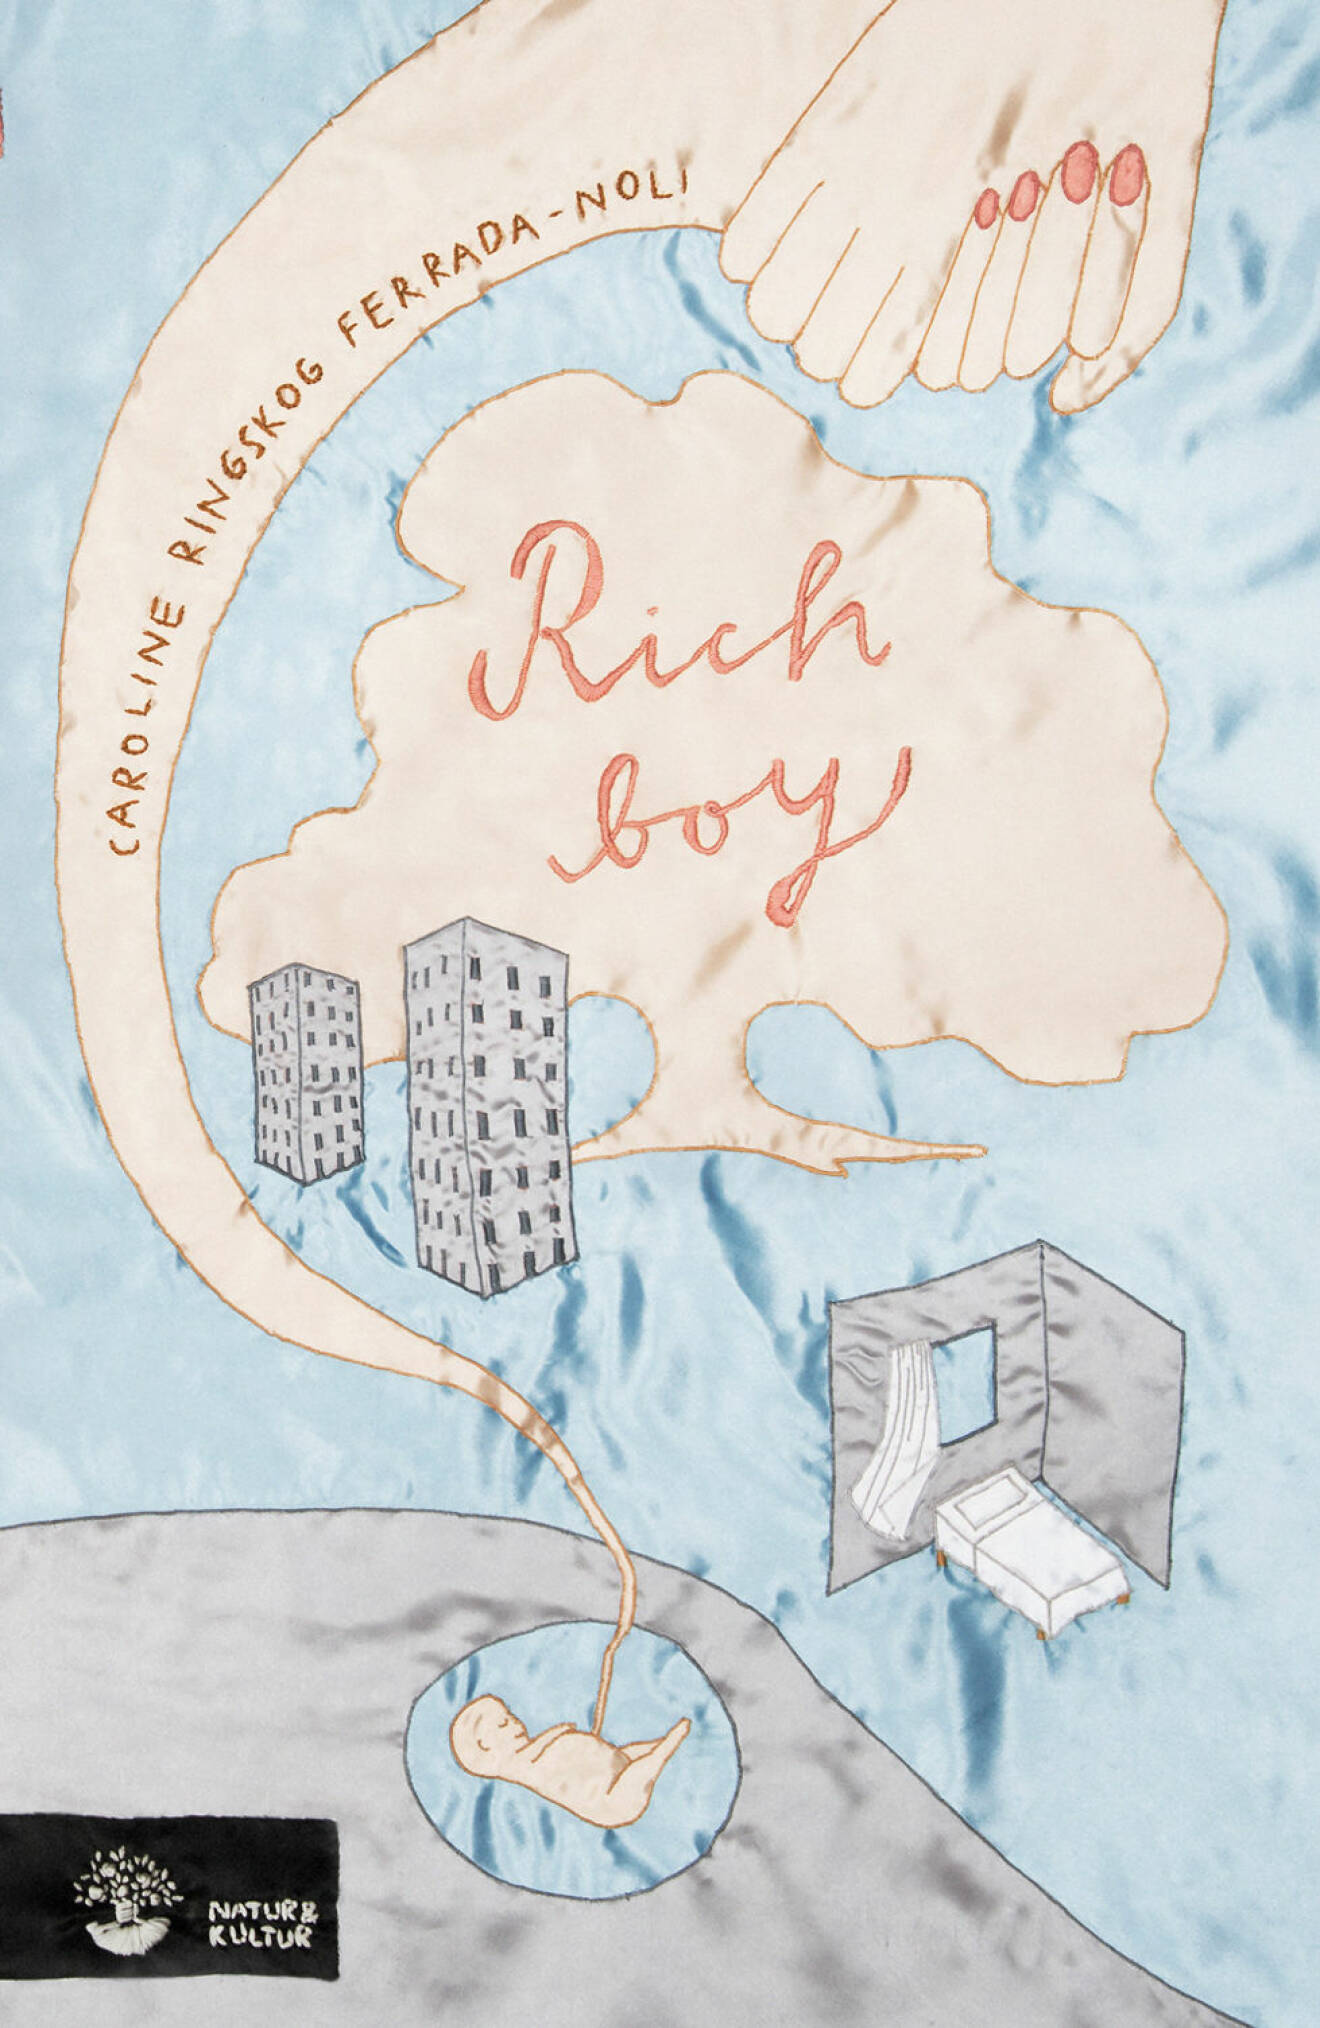 Rich Boy av Caroline Ringskog Ferrada-Noli